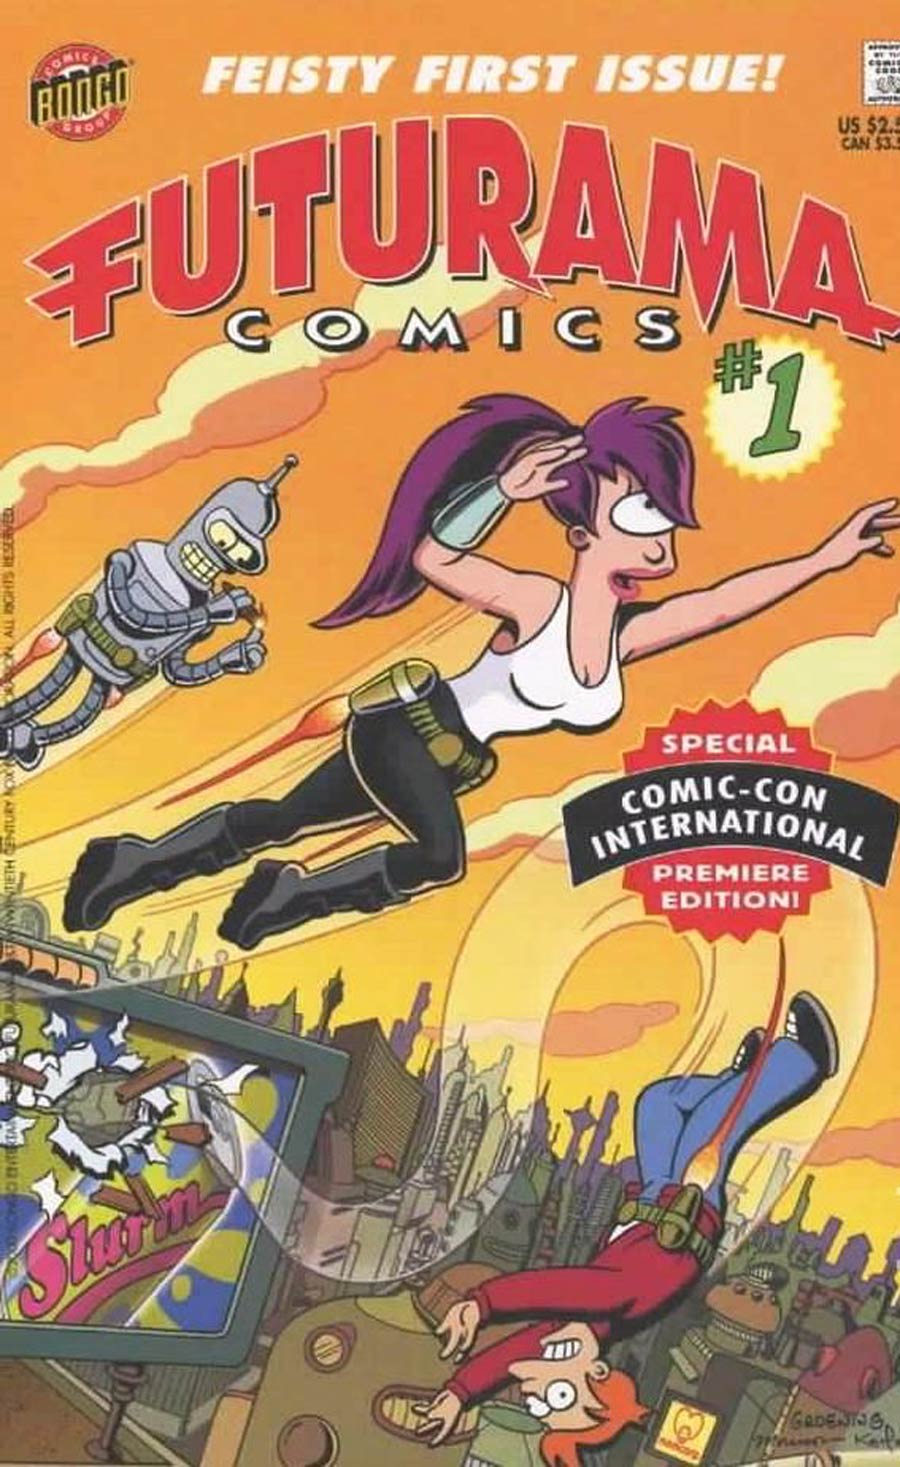 Futurama Comics #1 Cover B San Diego Comic Con Premiere Edition